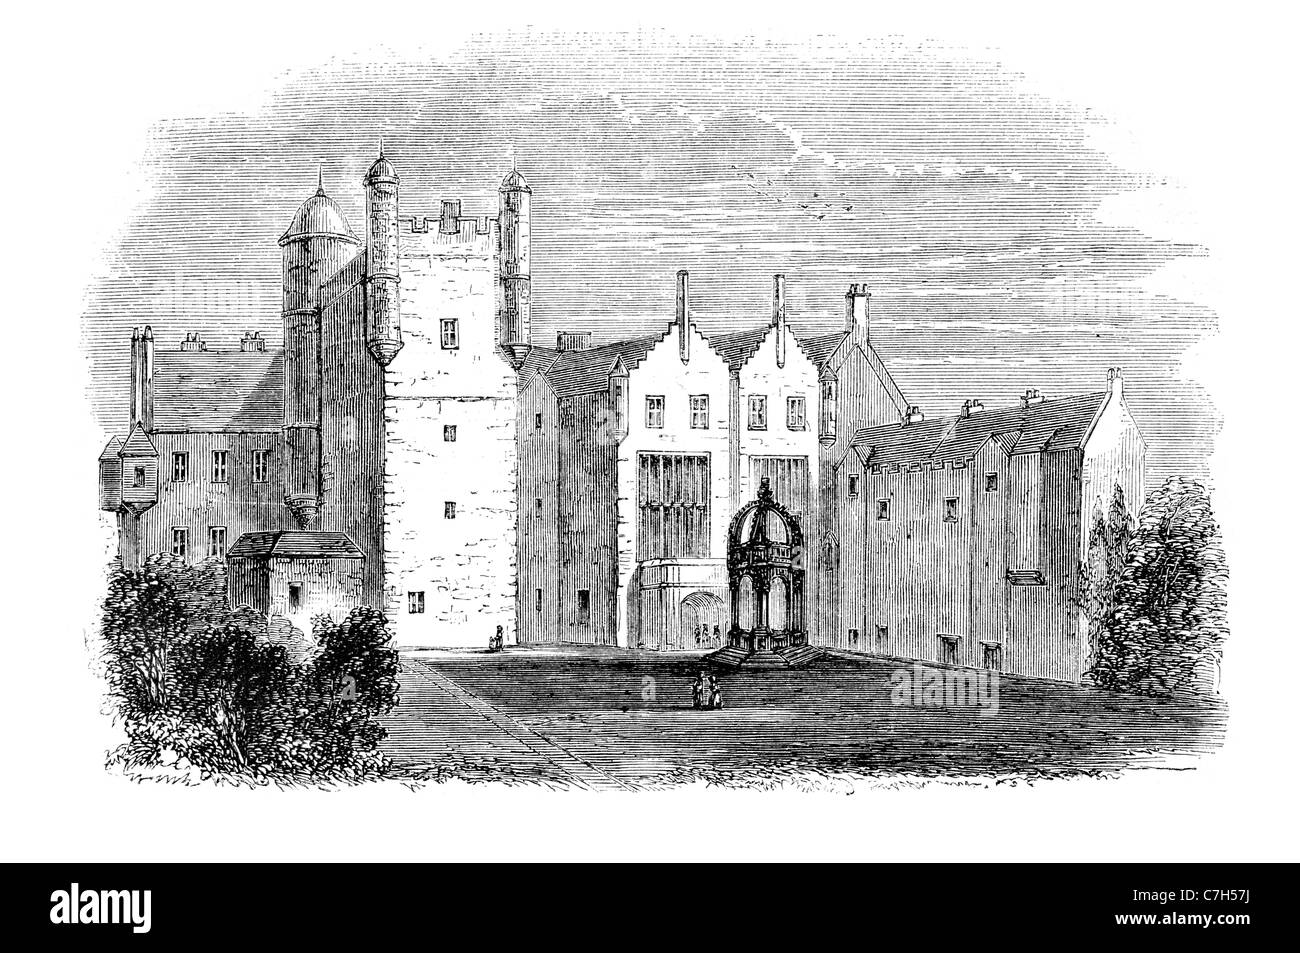 Pinkie house historic Tower House East Lothian en Écosse Musselburgh abbés de Dunfermline bataille architecture palace Banque D'Images